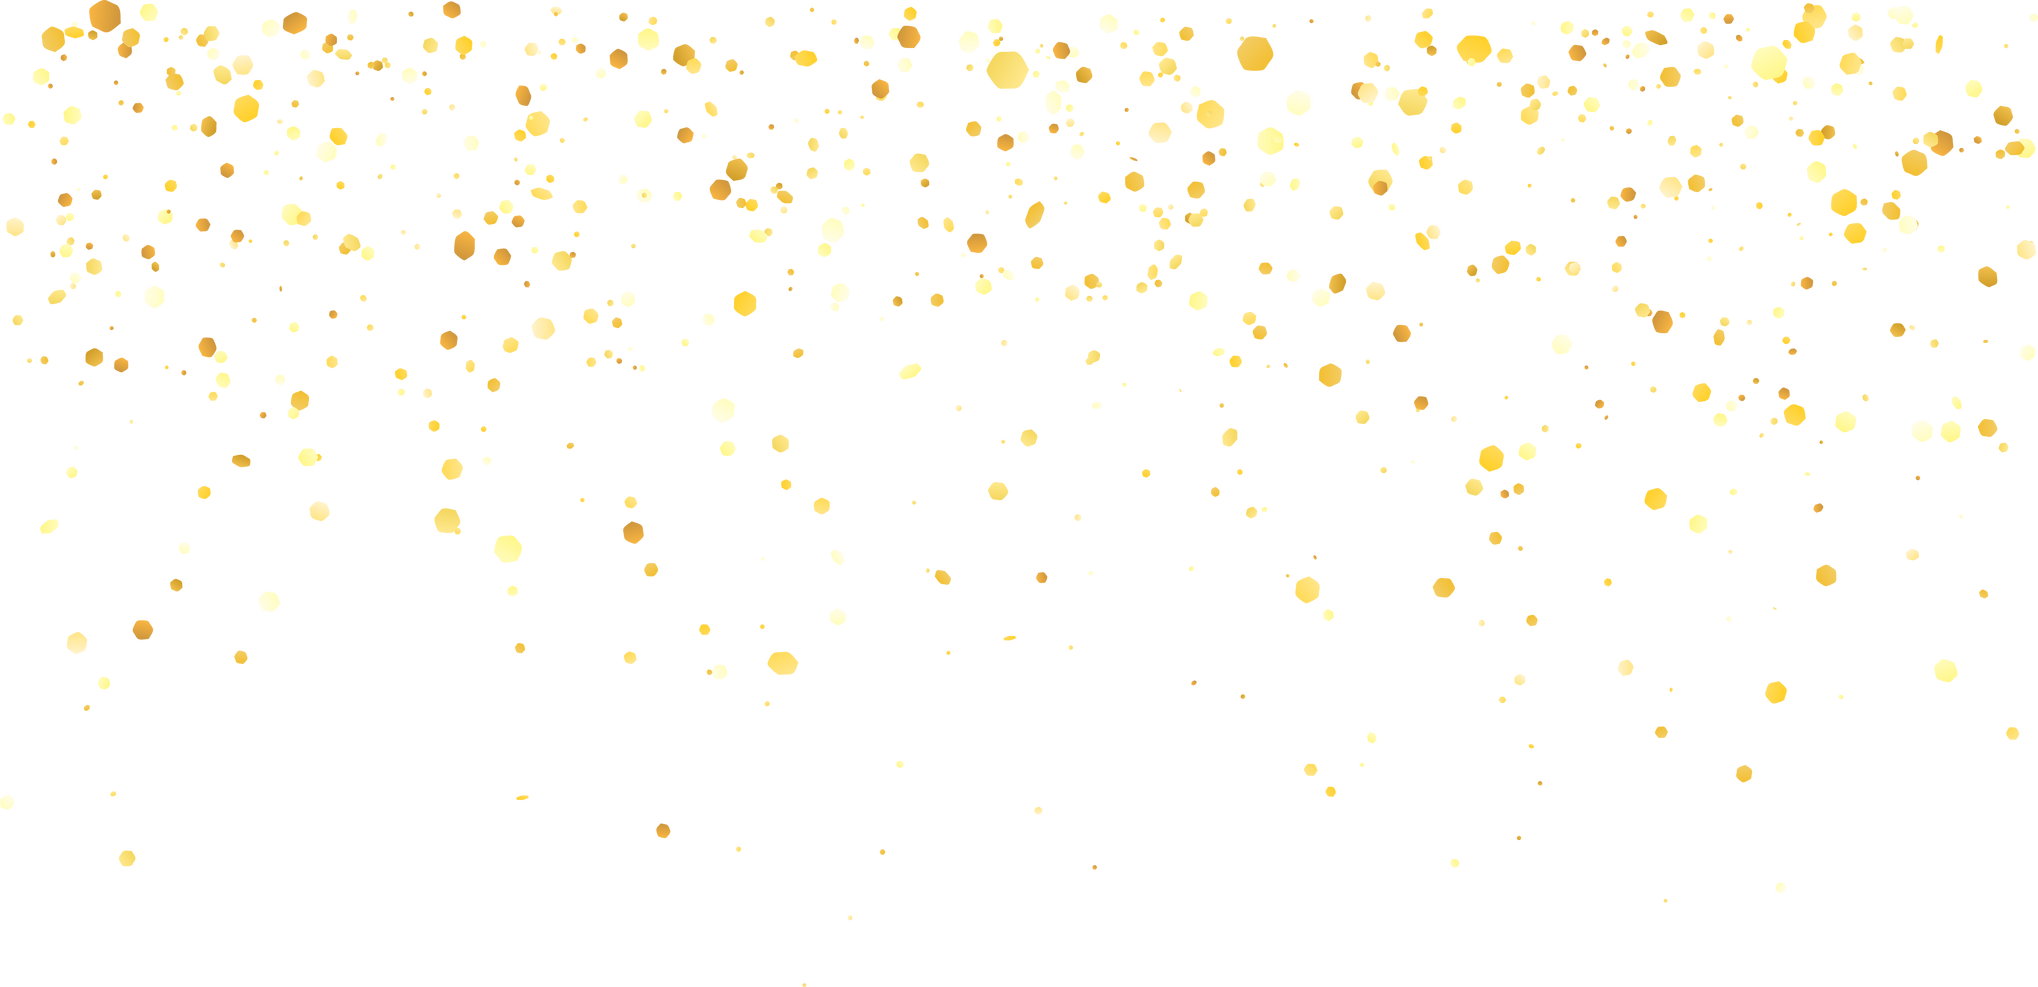 Yellow gold glitter confetti